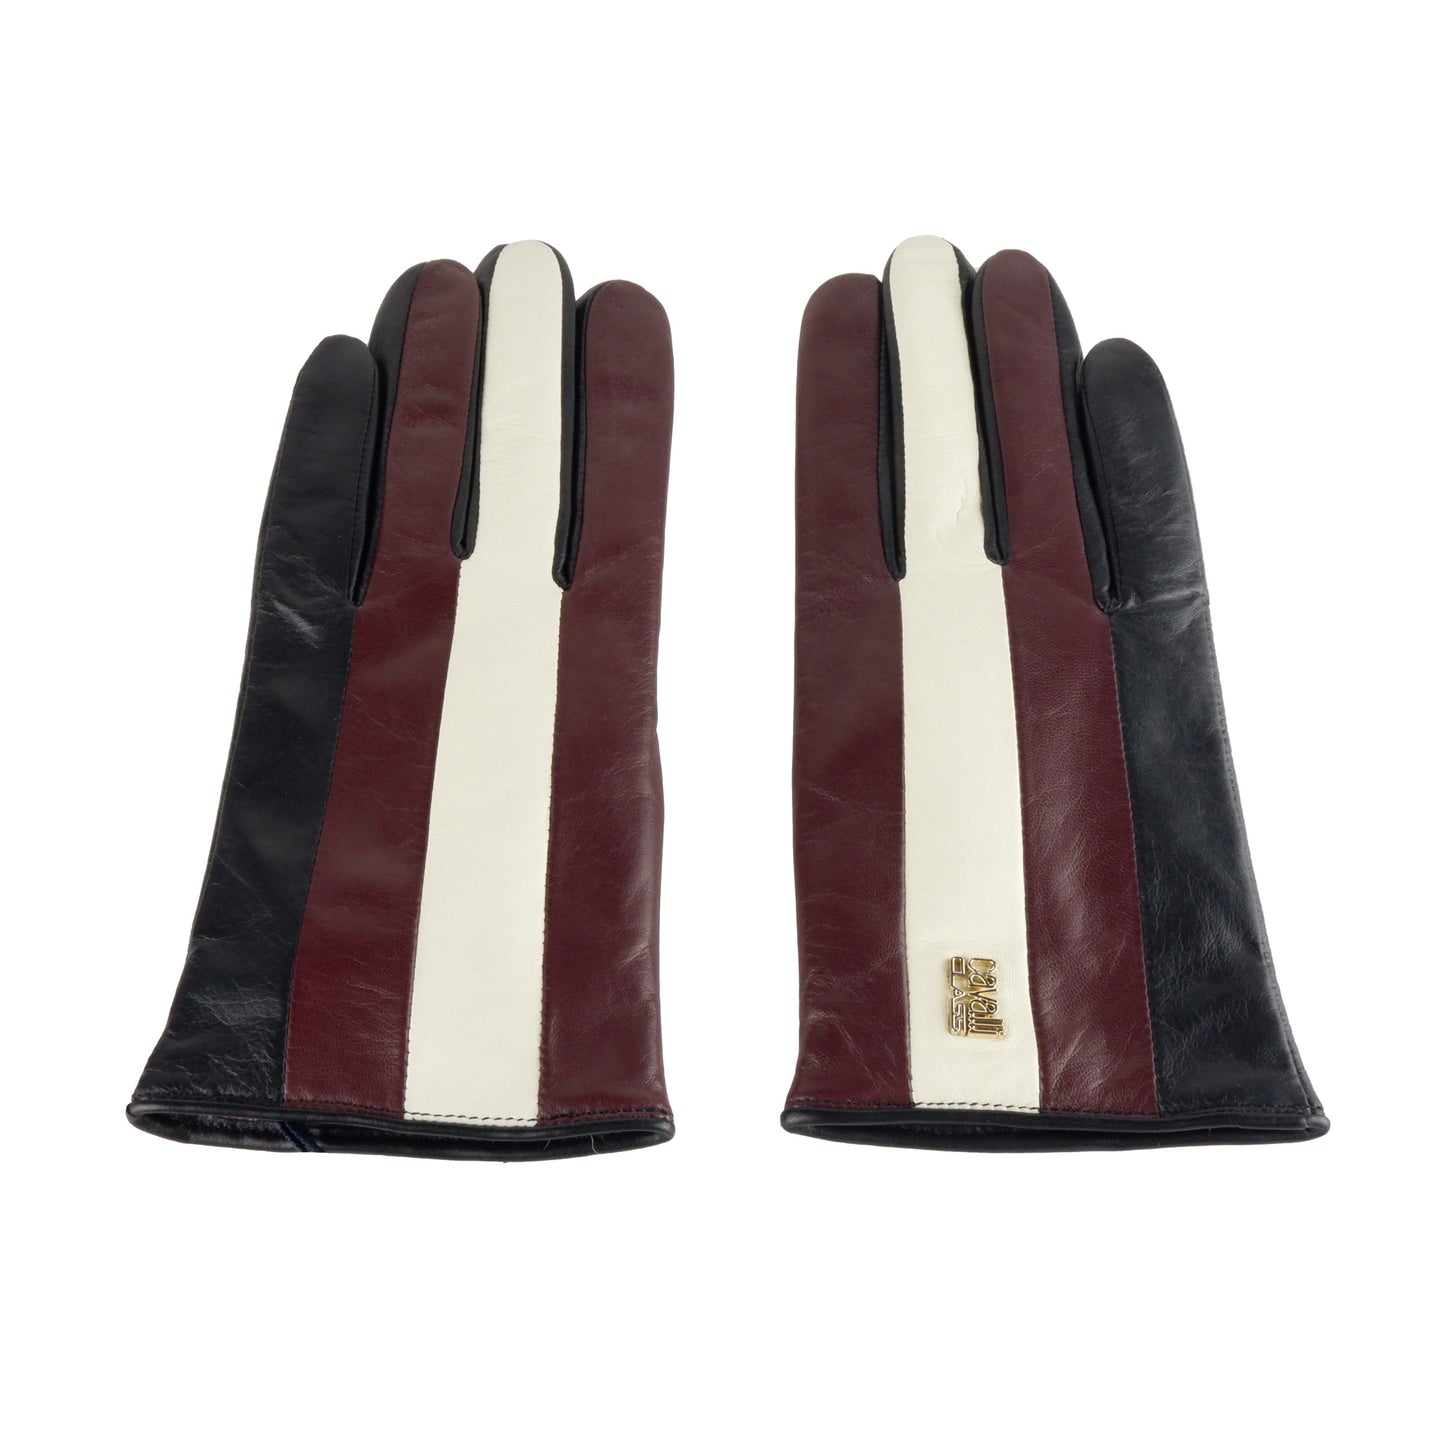 Cavalli Class Red Lambskin Glove - DEA STILOSA MILANO